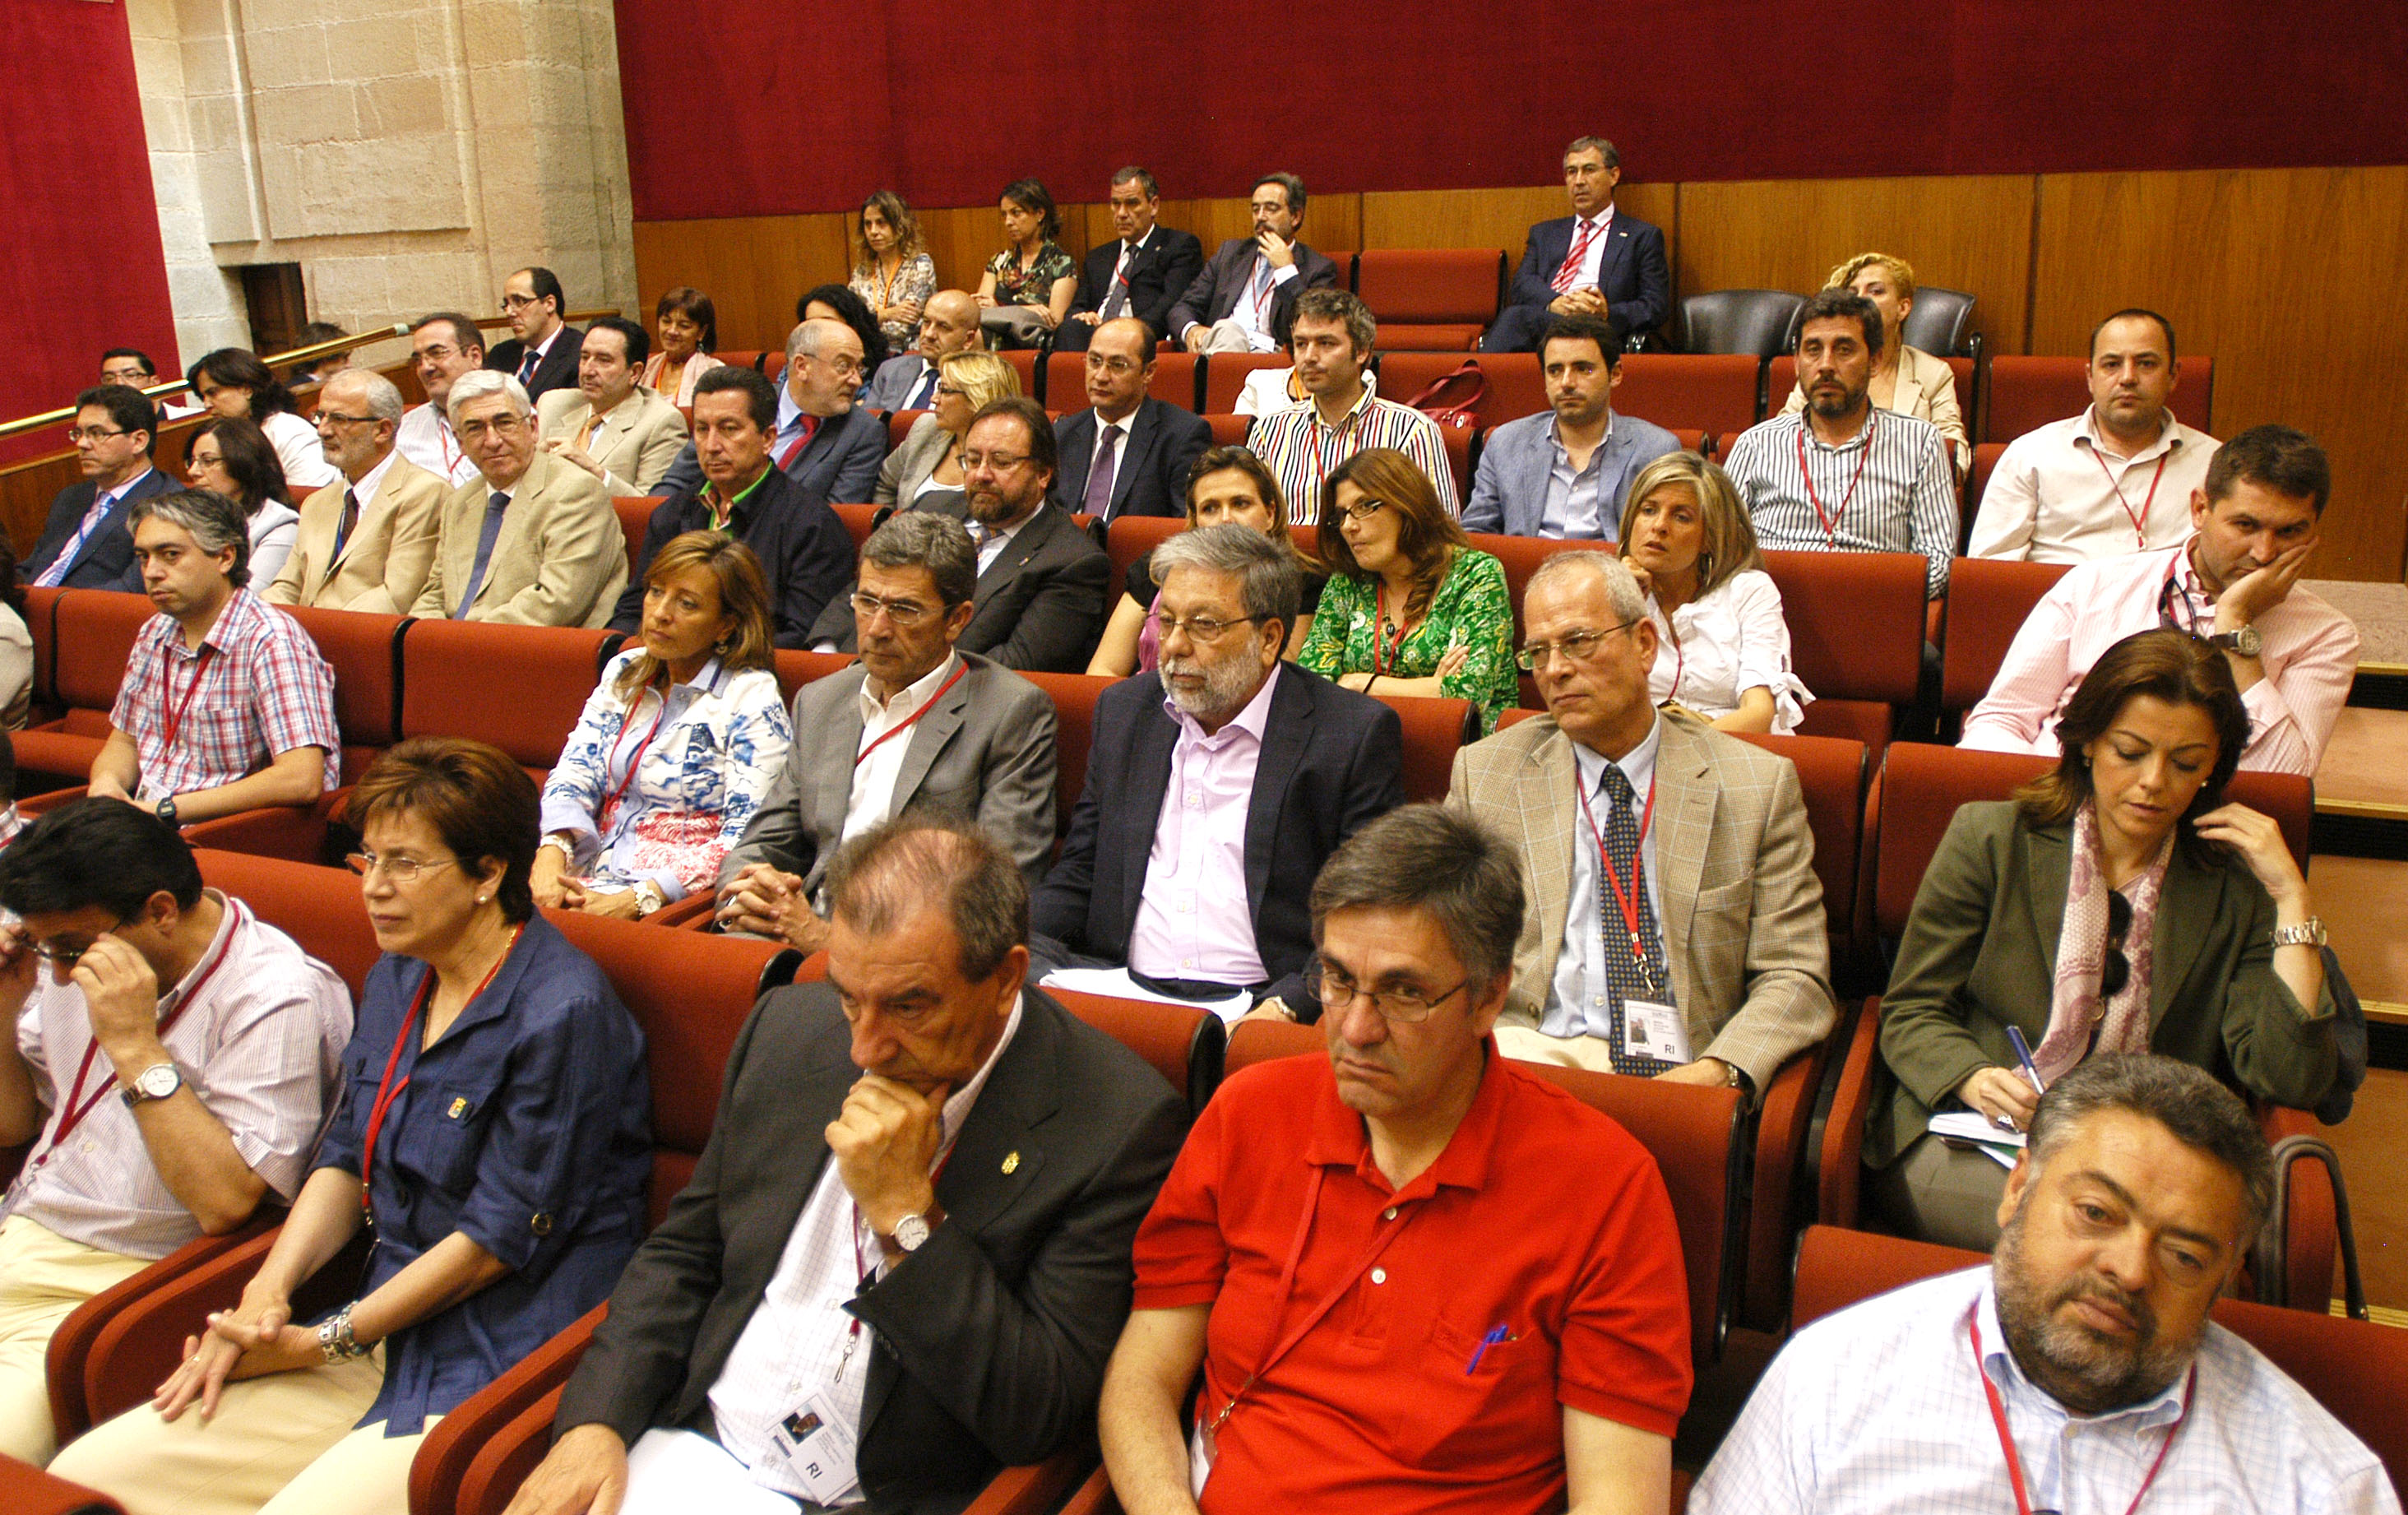 Alcaldes andaluces presentes en la sesión parlamentaria en la que se aprobaron las leyes